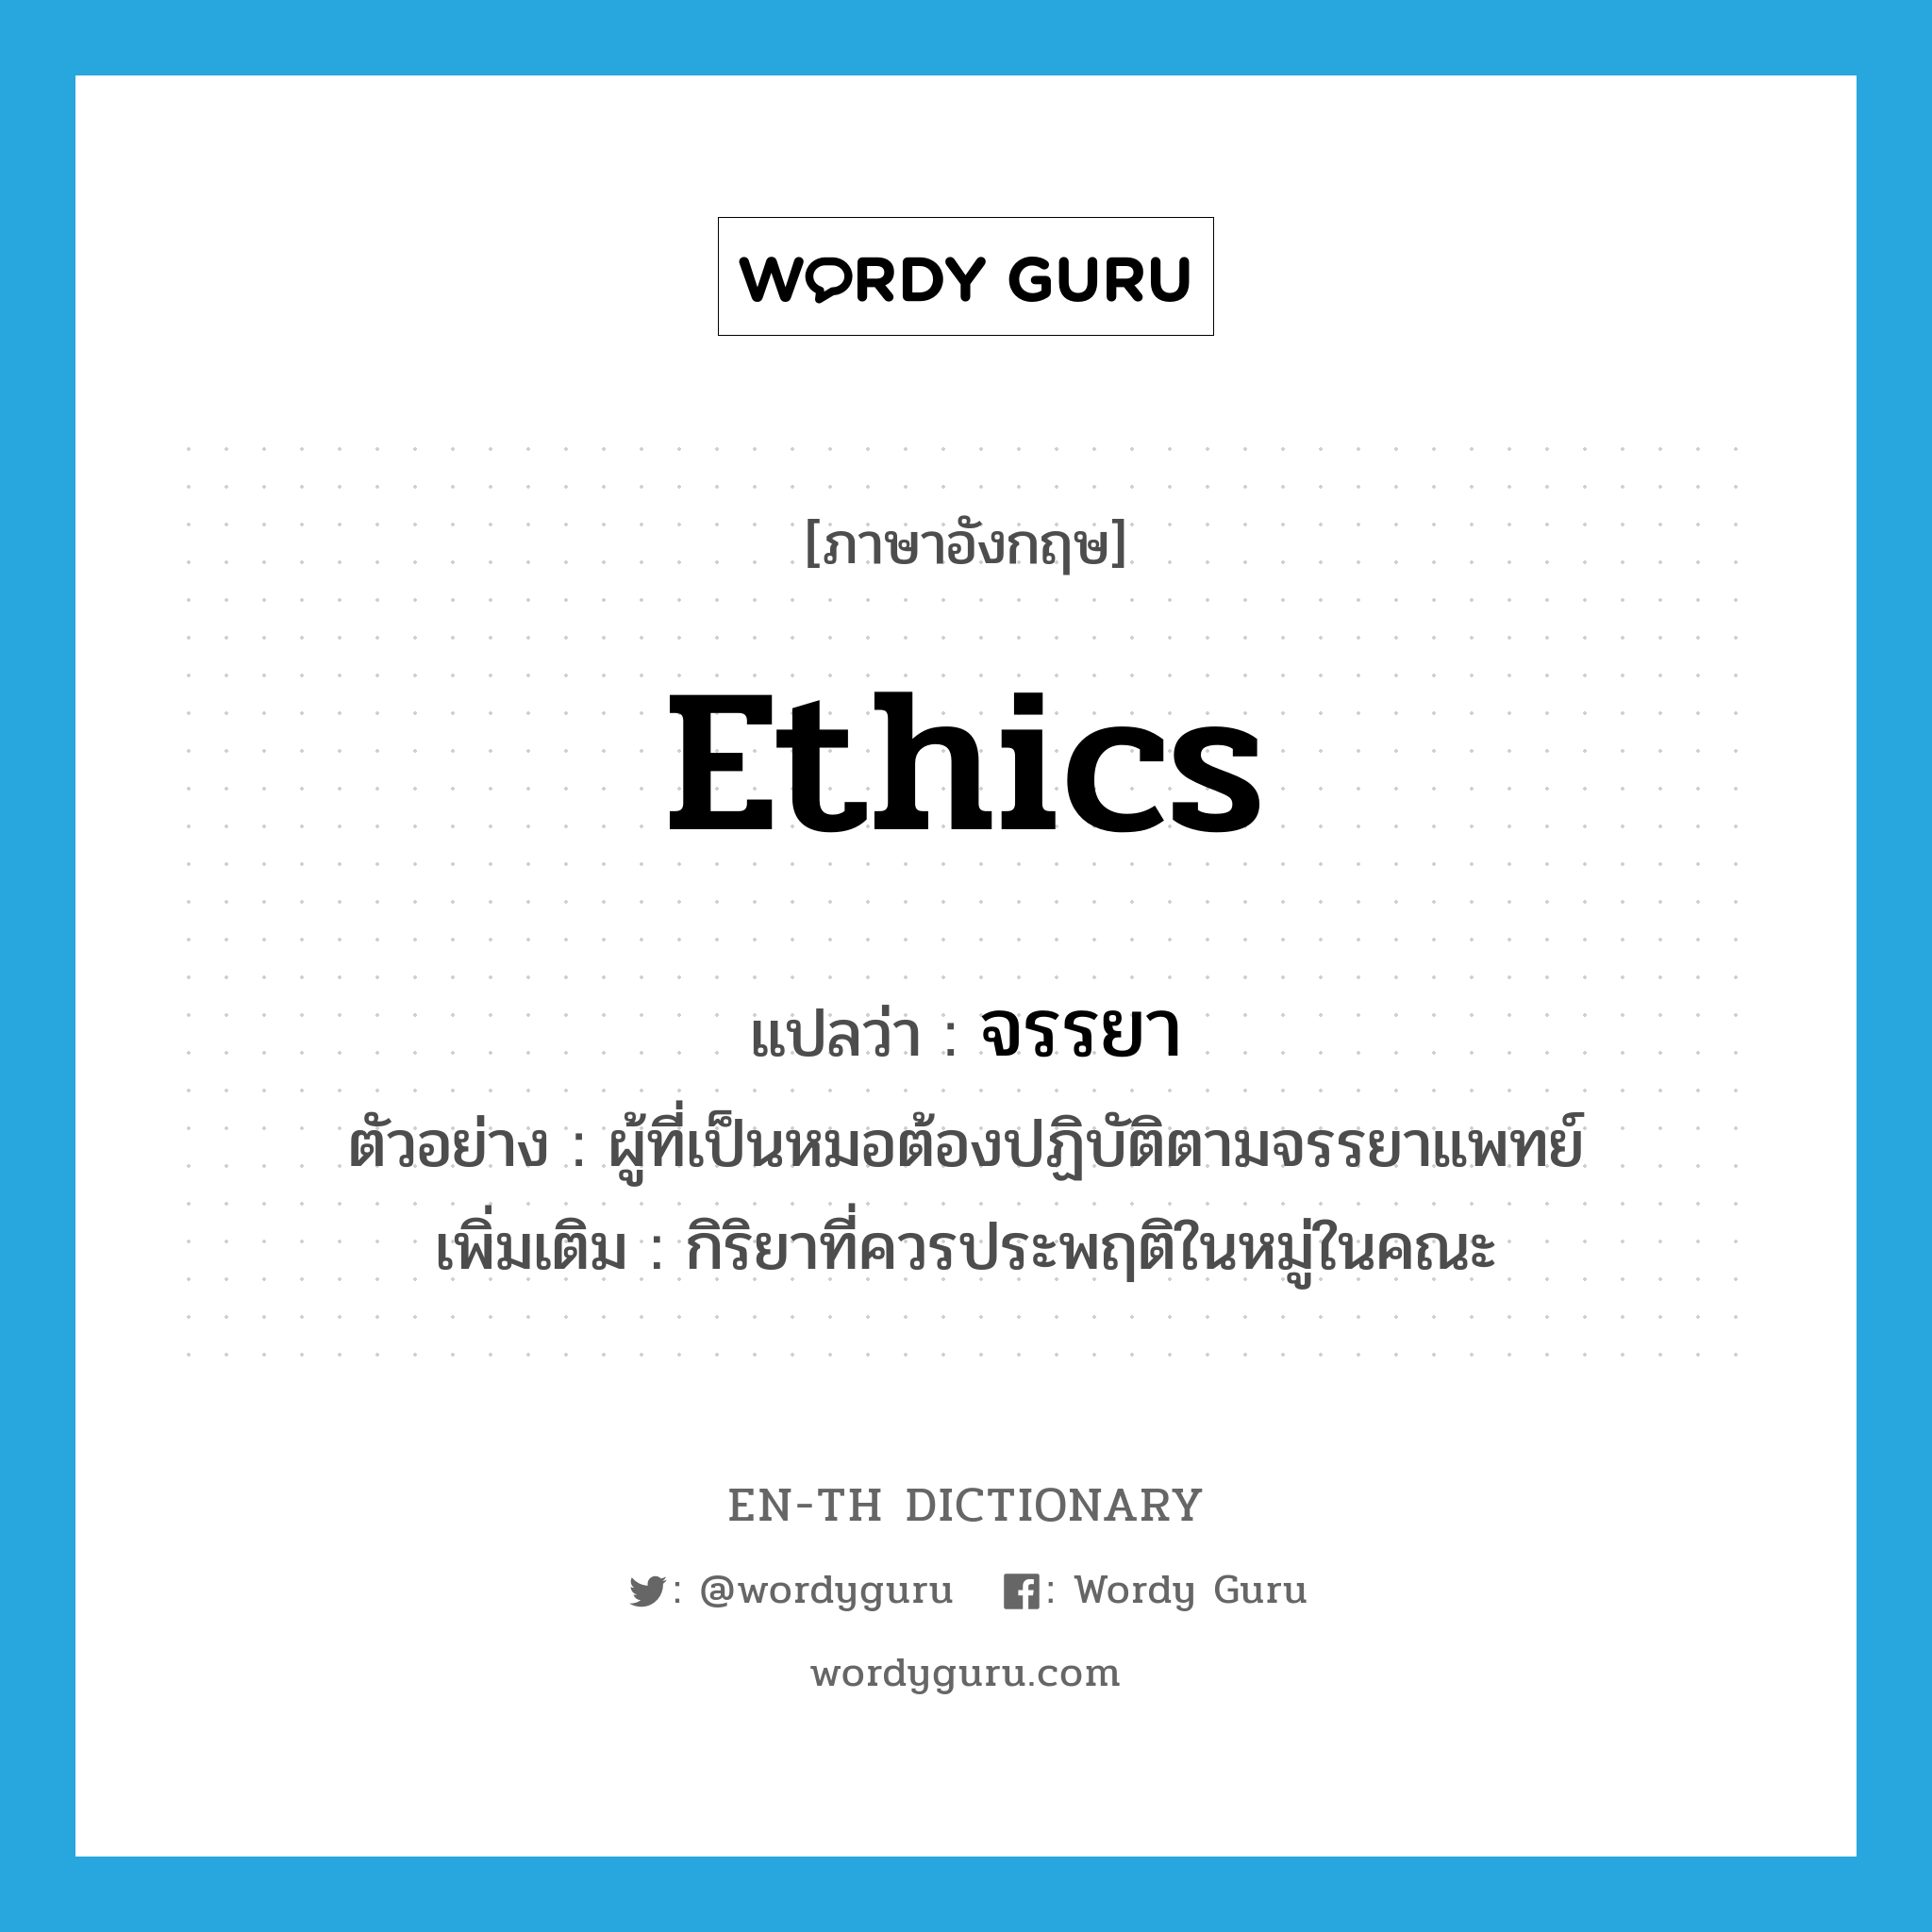 ethics แปลว่า?, คำศัพท์ภาษาอังกฤษ ethics แปลว่า จรรยา ประเภท N ตัวอย่าง ผู้ที่เป็นหมอต้องปฏิบัติตามจรรยาแพทย์ เพิ่มเติม กิริยาที่ควรประพฤติในหมู่ในคณะ หมวด N